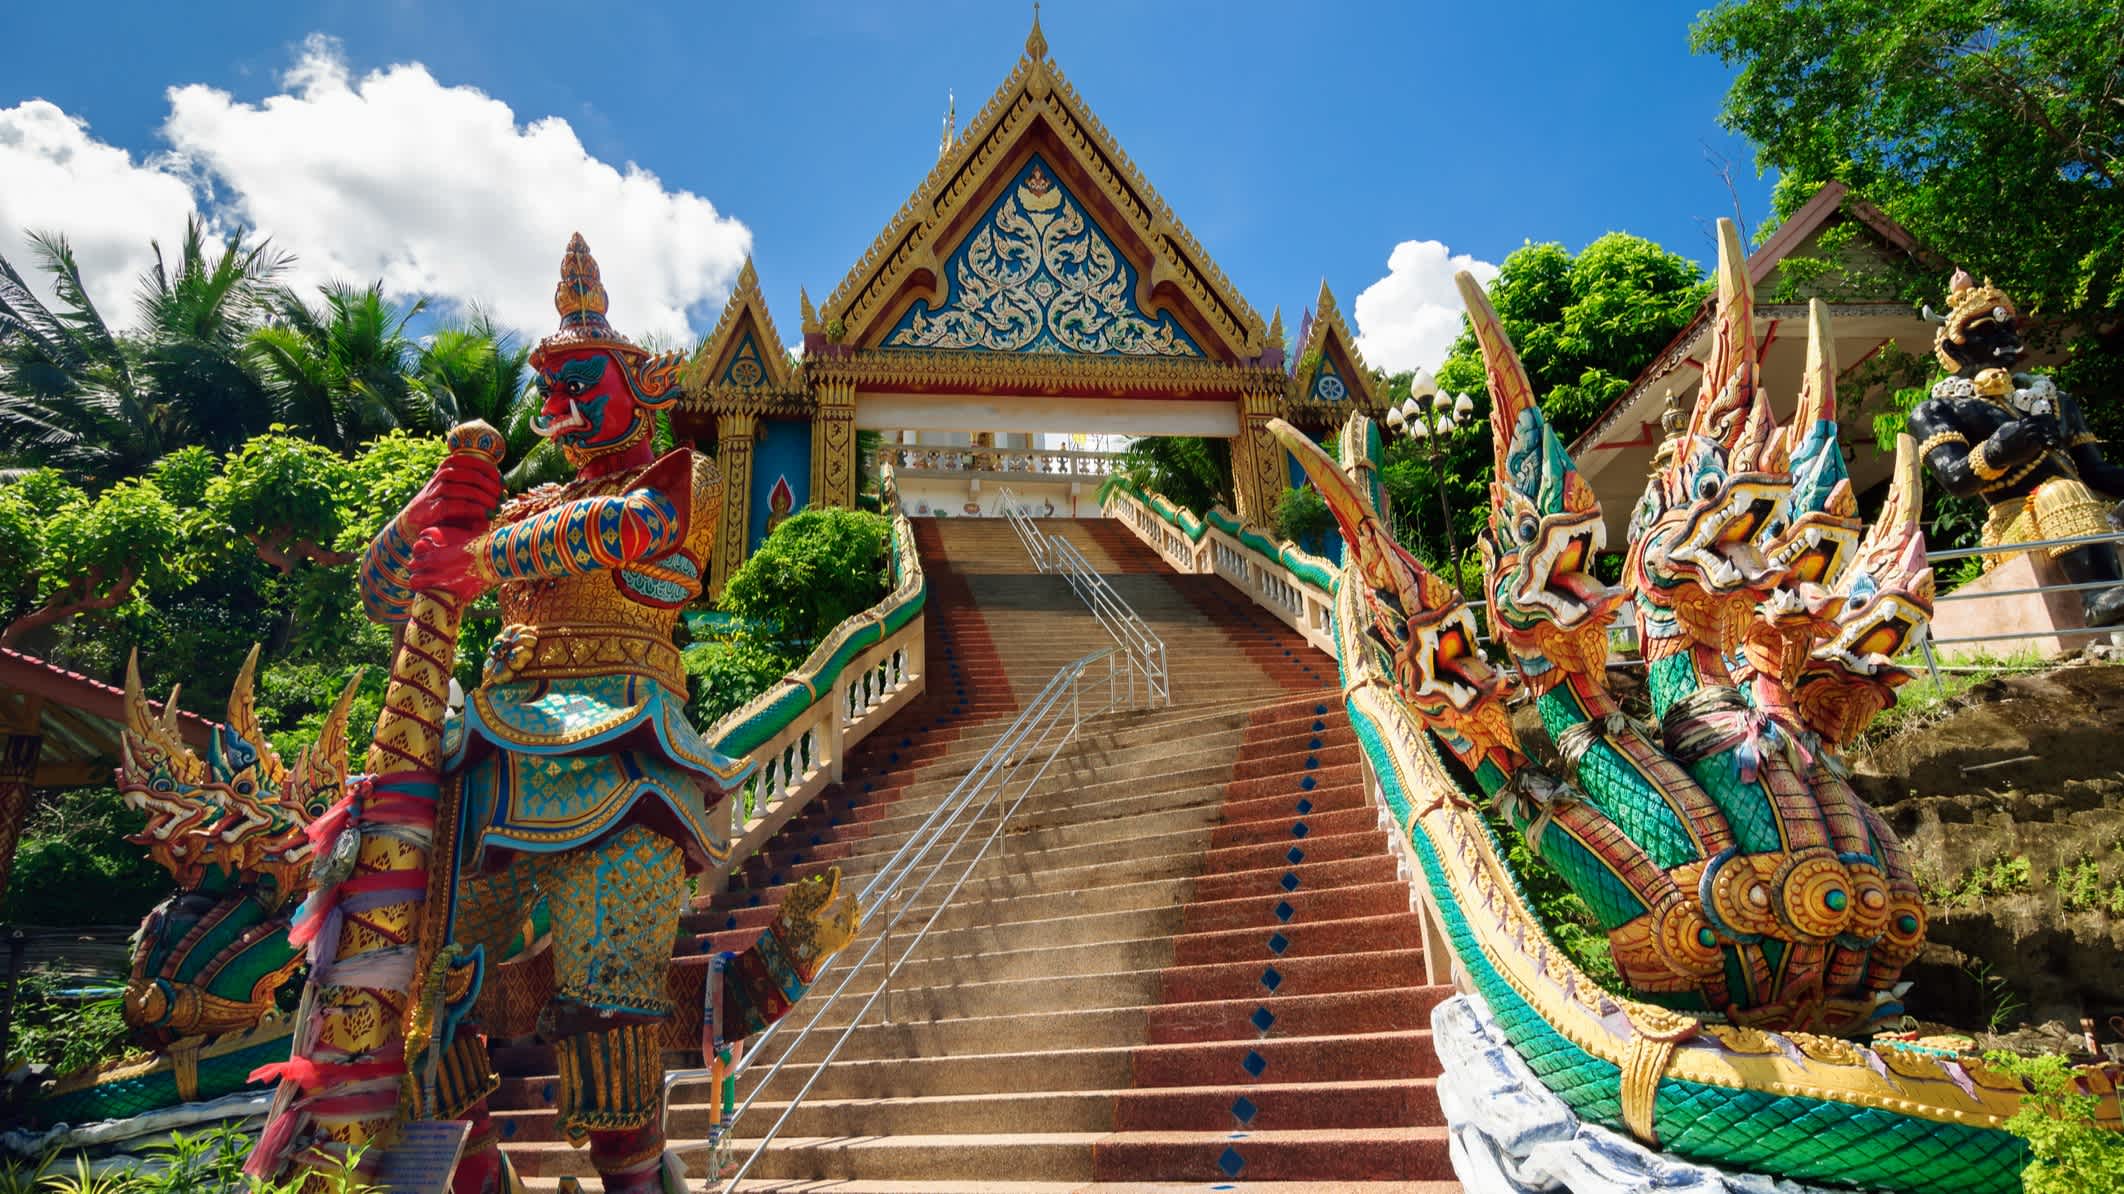 Blick auf den Wat Khao Rang Tempel in Phuket Stadt, Thailand

